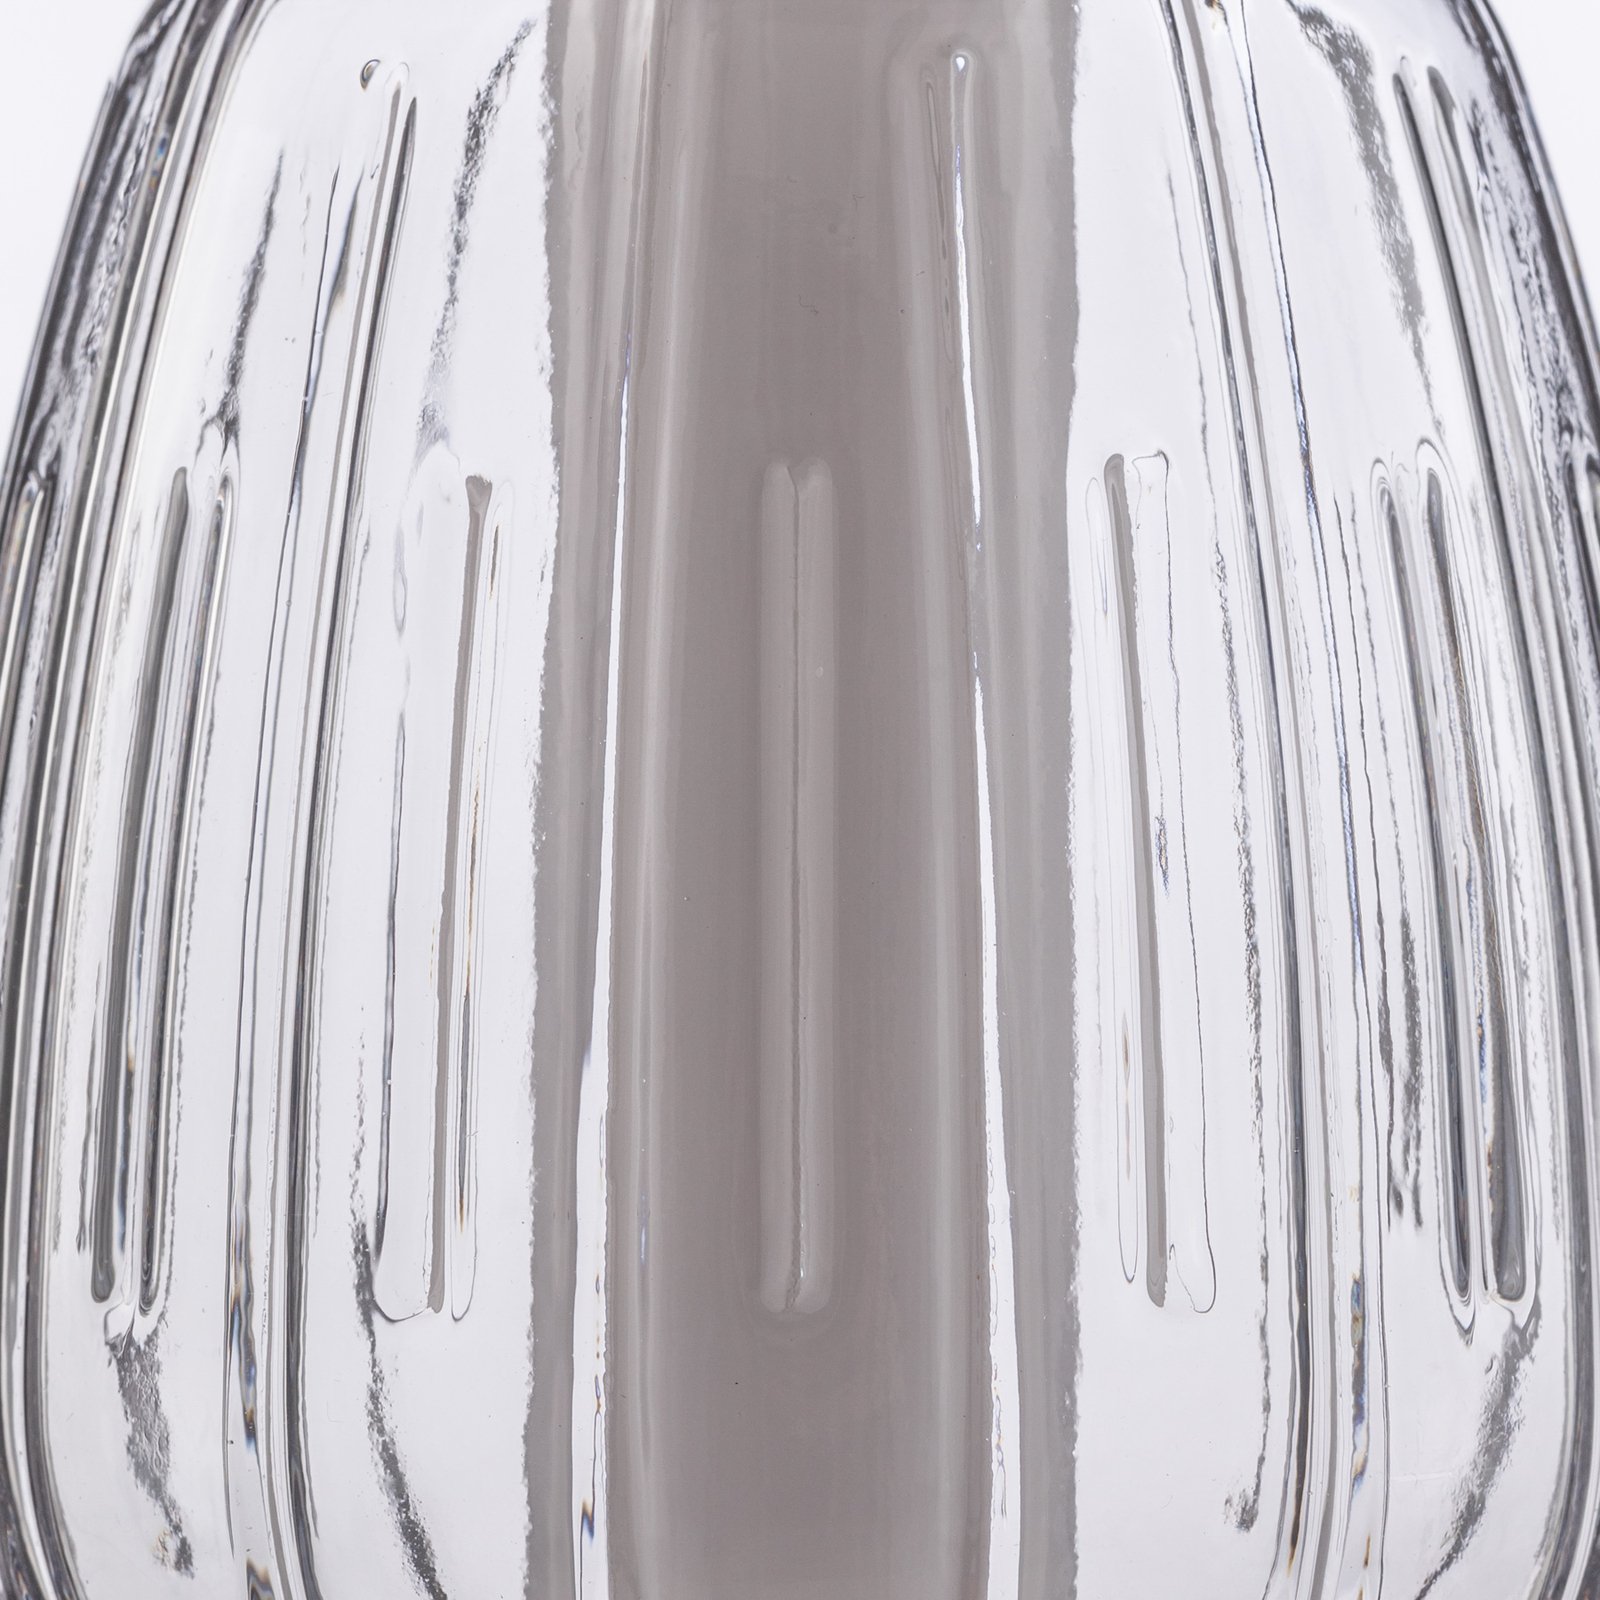 Lucande LED-pendel Fedra, glass, grå/hvit, Ø 17 cm